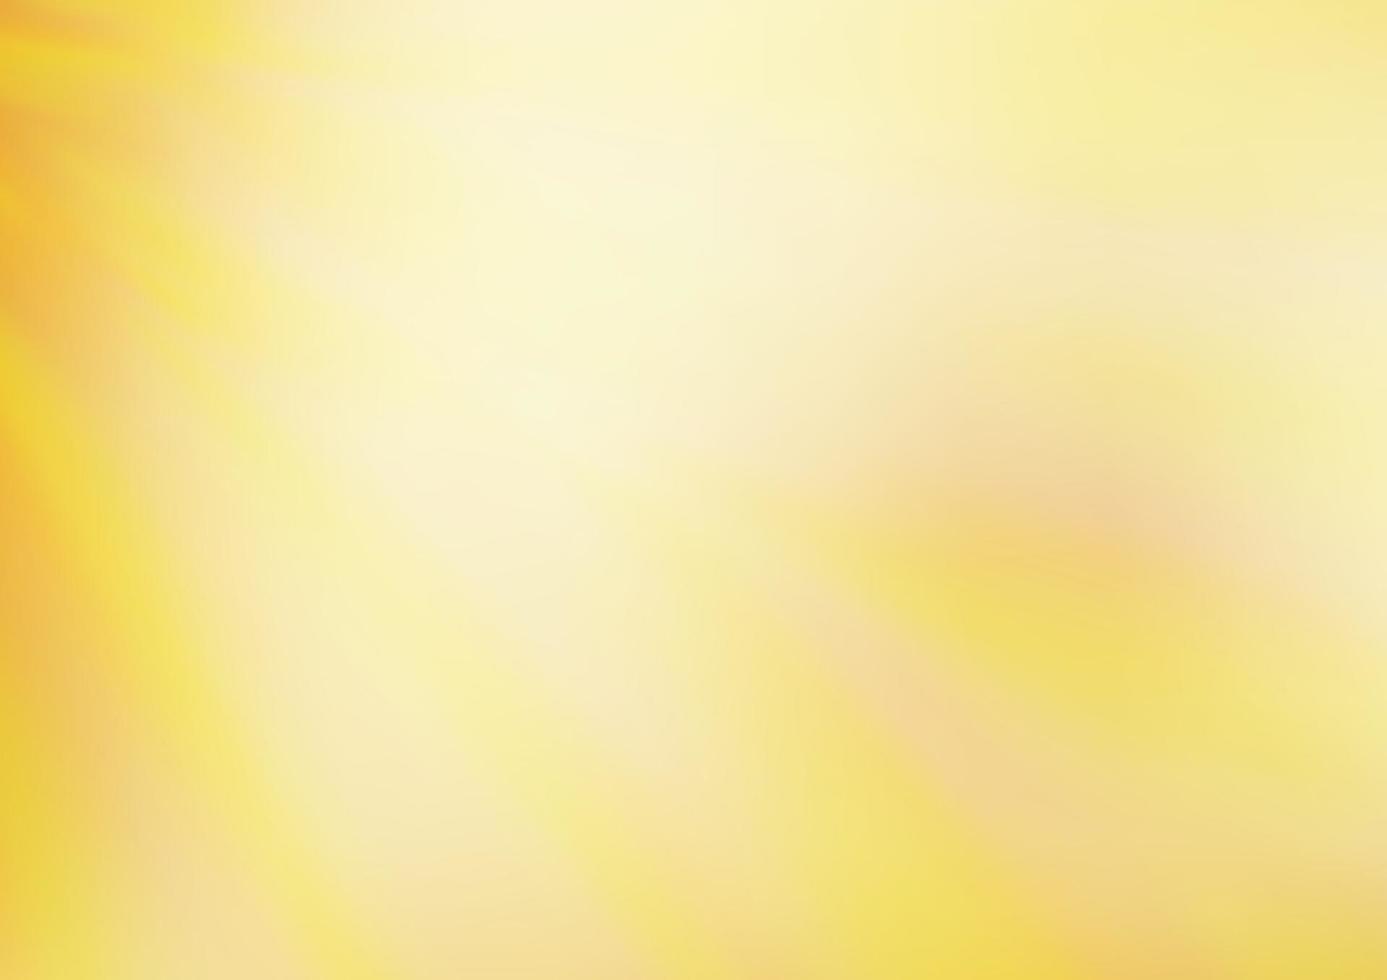 sfondo sfocato astratto vettoriale giallo chiaro, arancione.